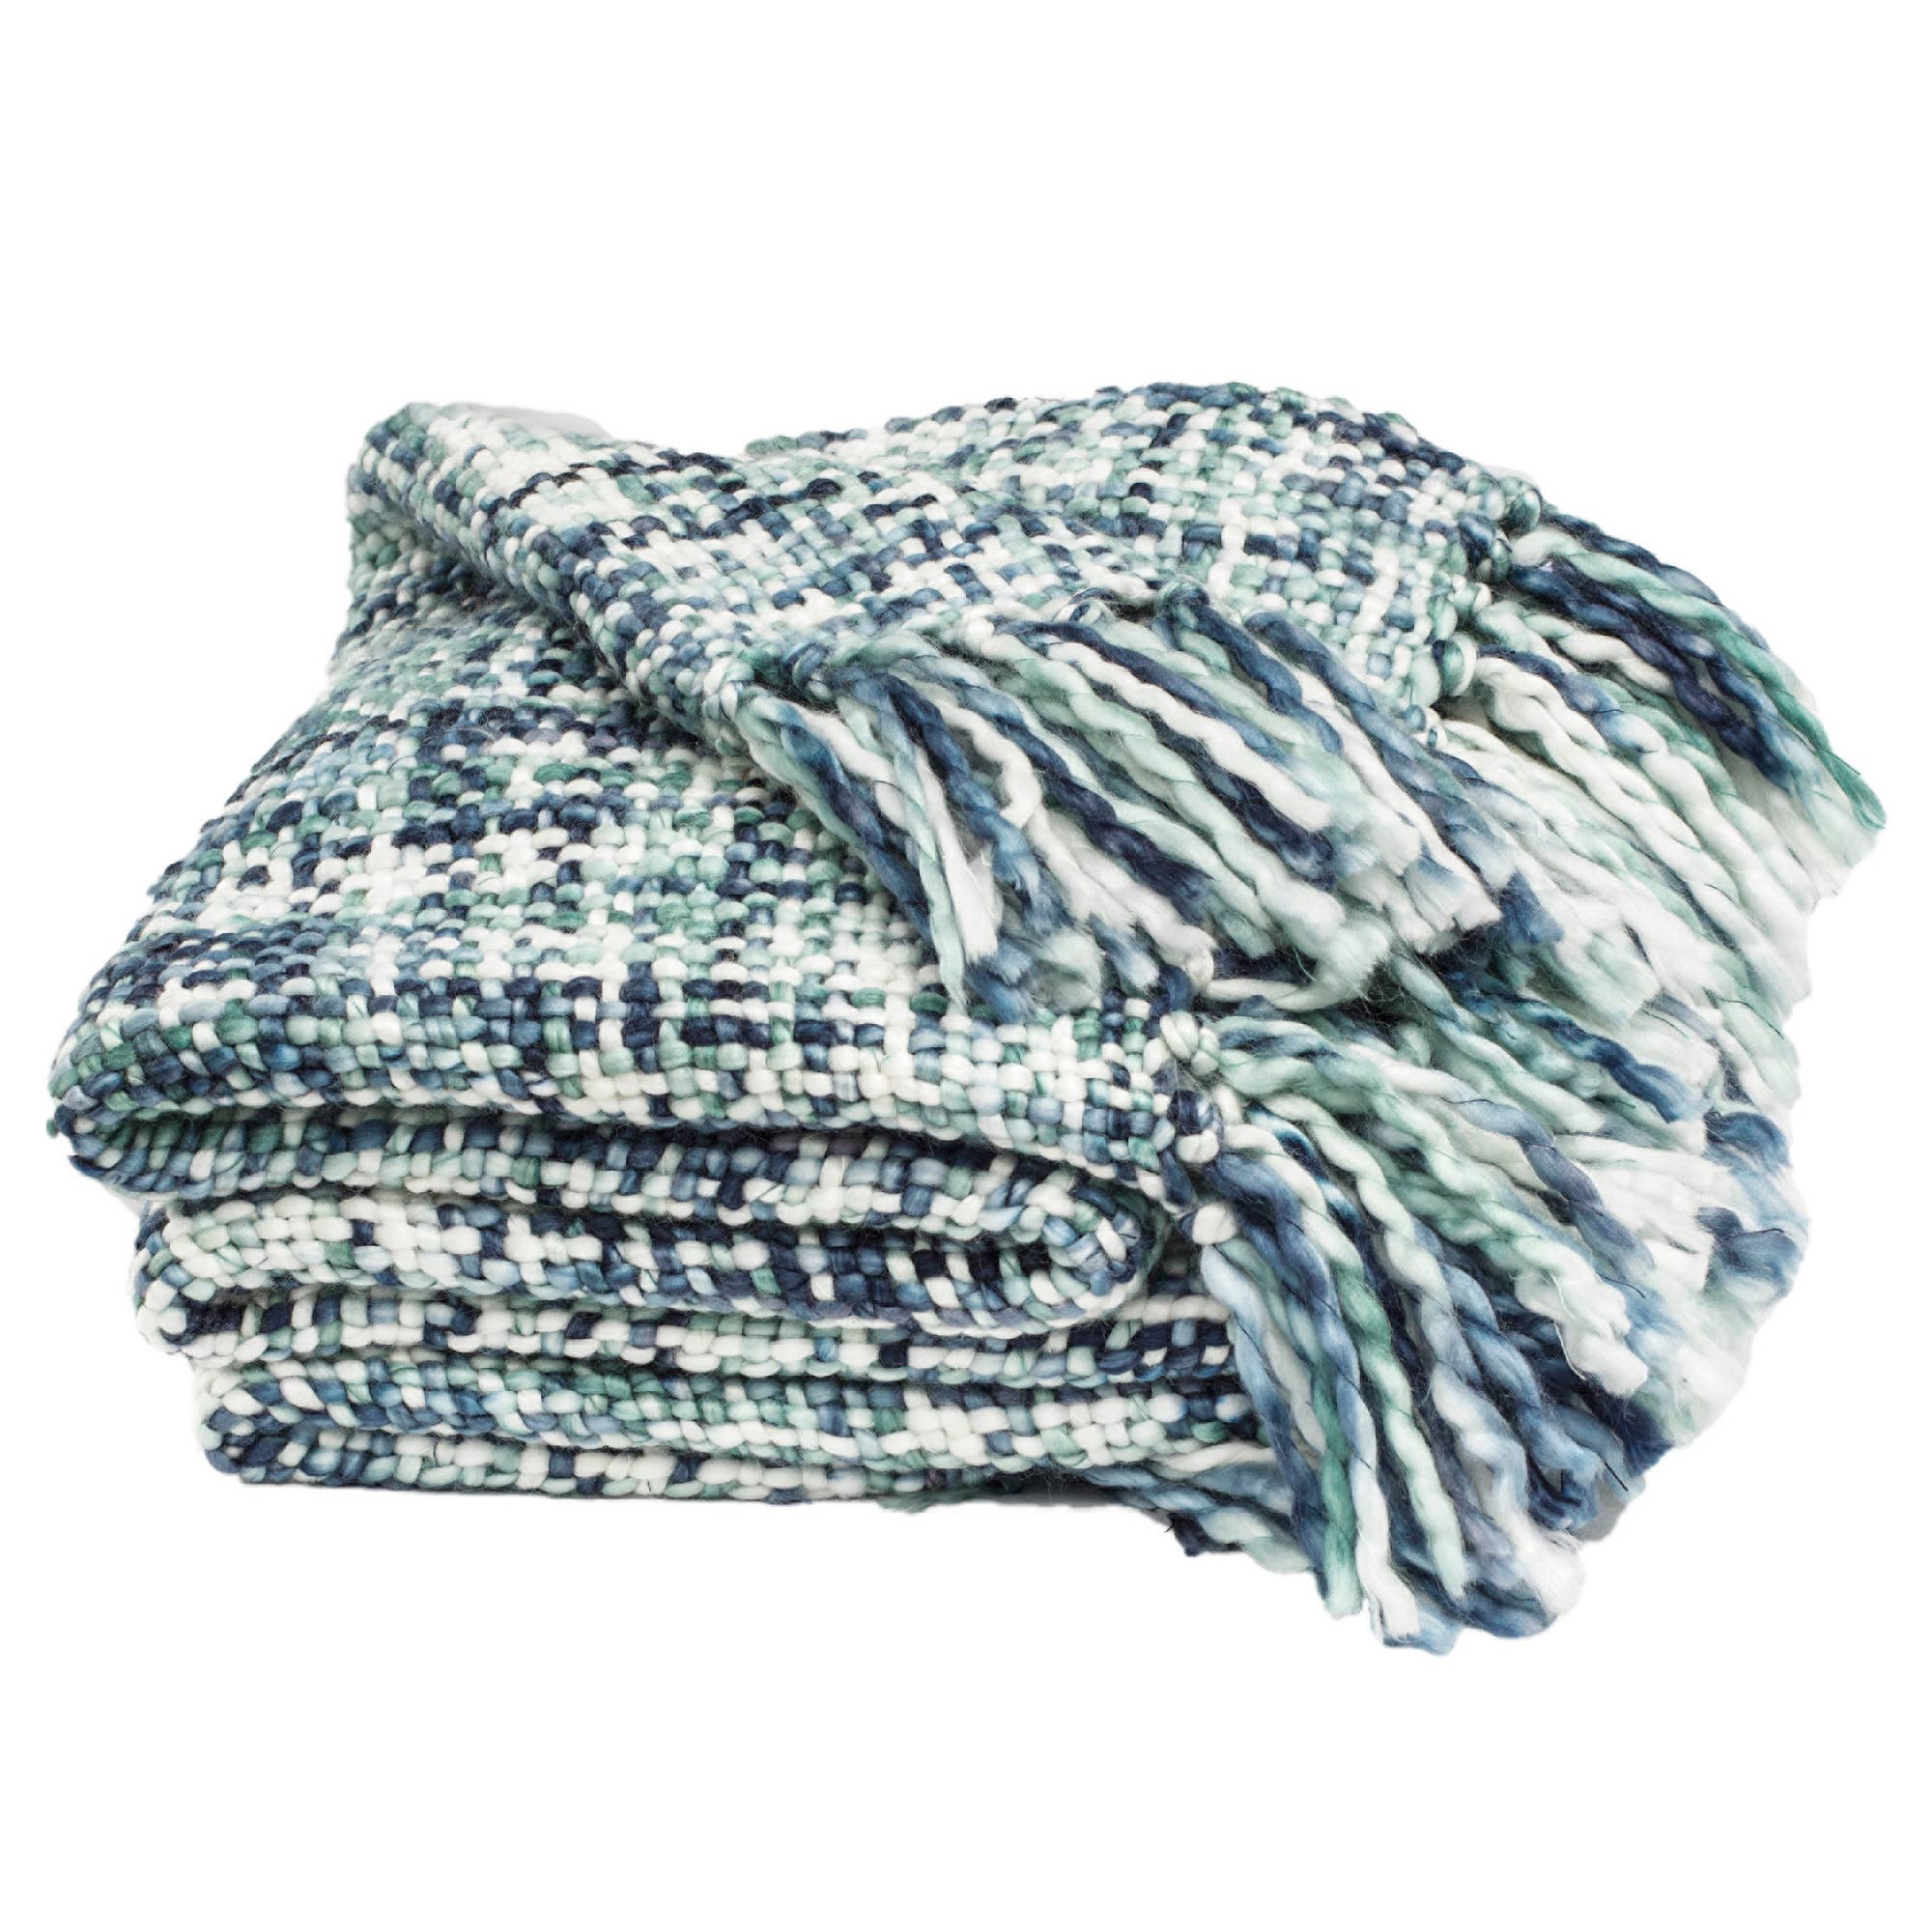 Marled Basketweave Plush Knit Throw Blanket